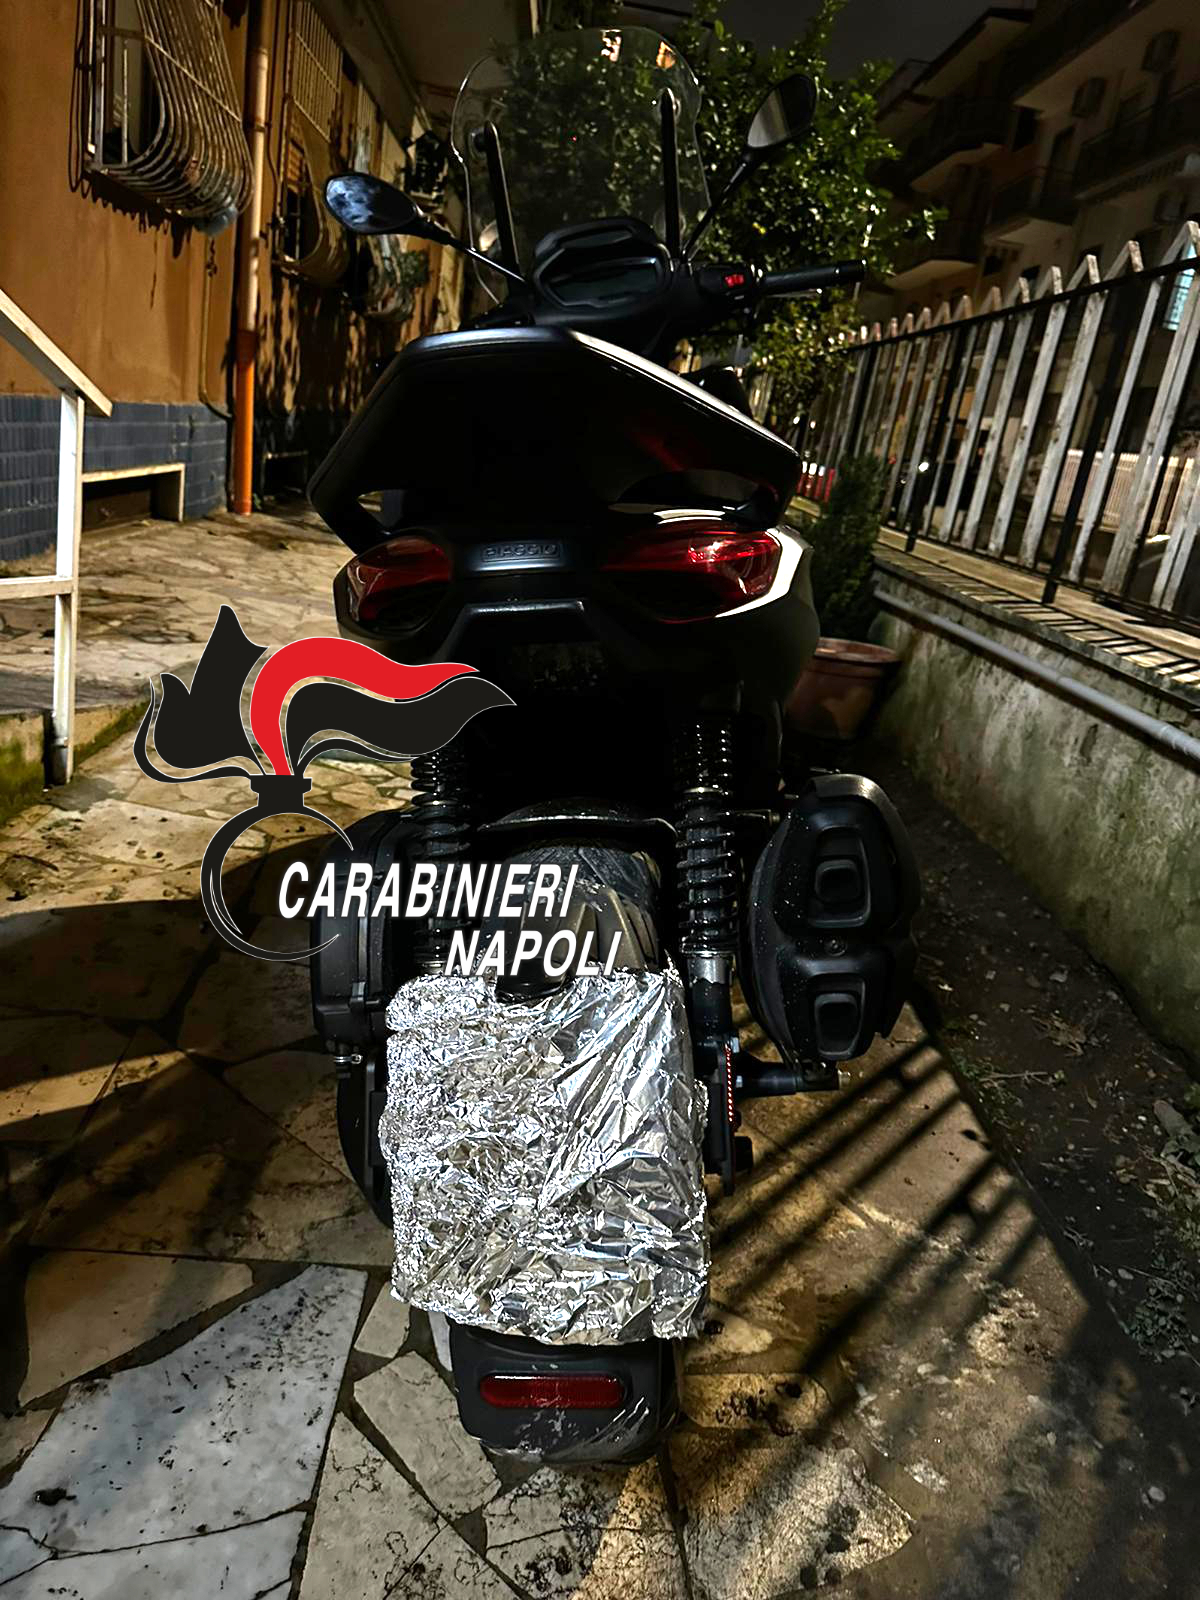 Carta stagnola sulla targa e pistola carica: pronti per un agguato arrestati dai carabinieri